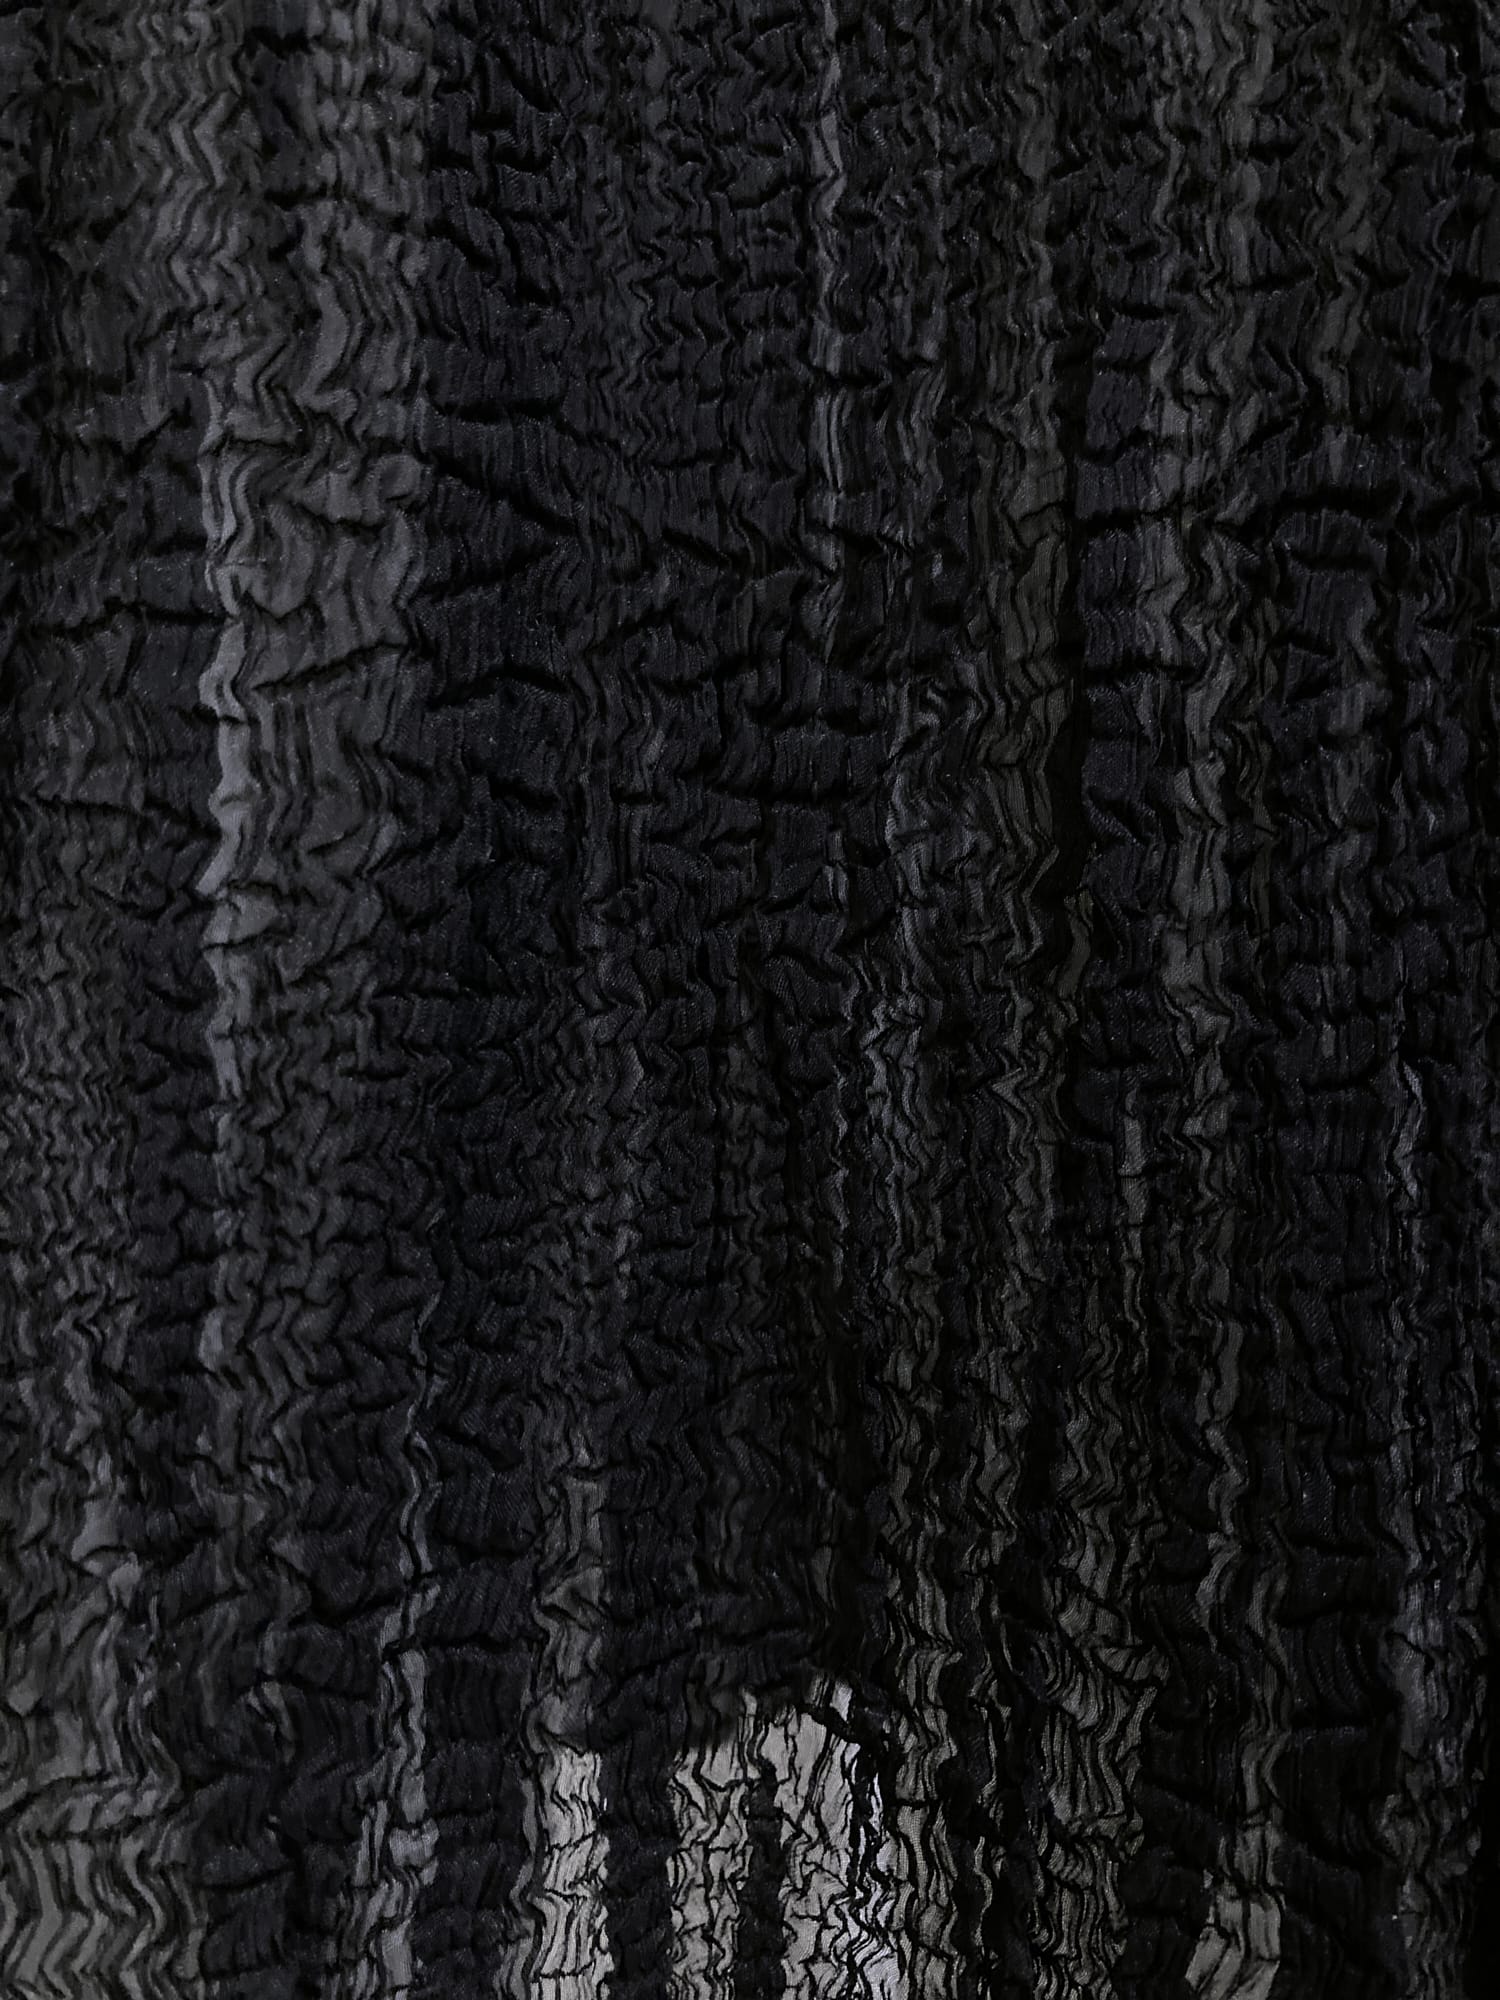 Wrinqle Inoue Pleats black wrinkled polyester skirt with sheer hem